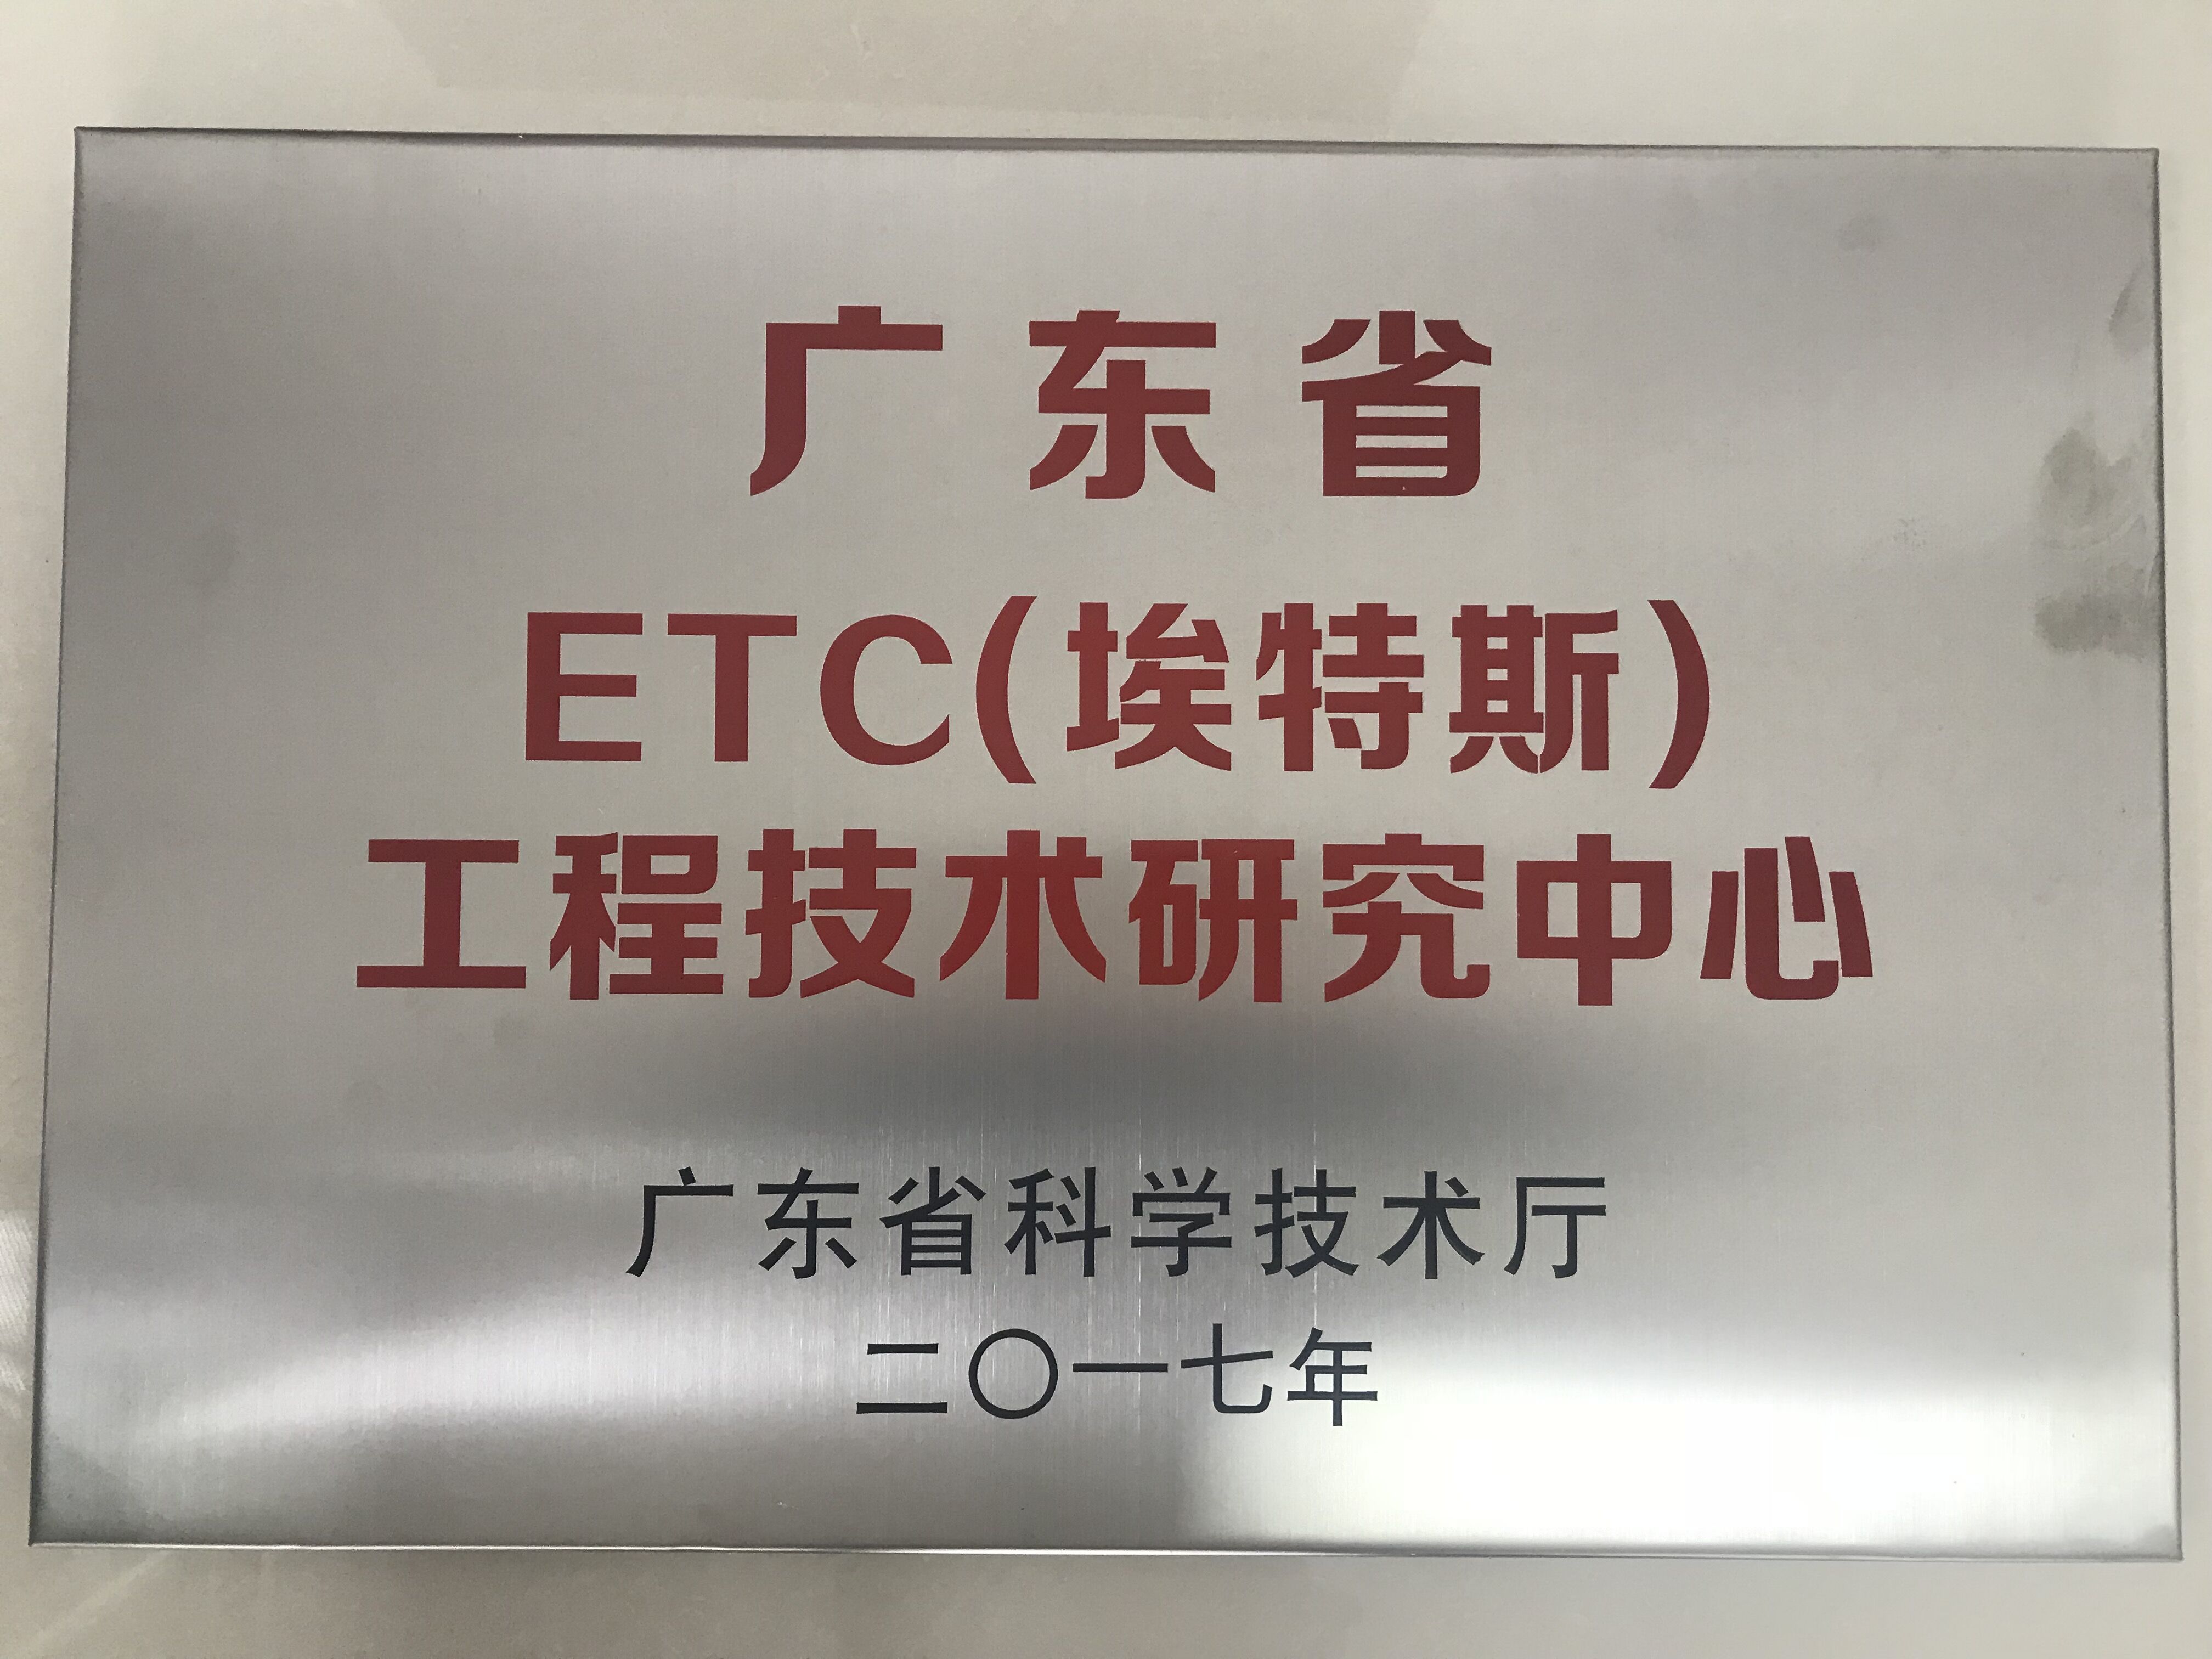 广东省ETC（埃特斯）工程技术研究中心.jpg